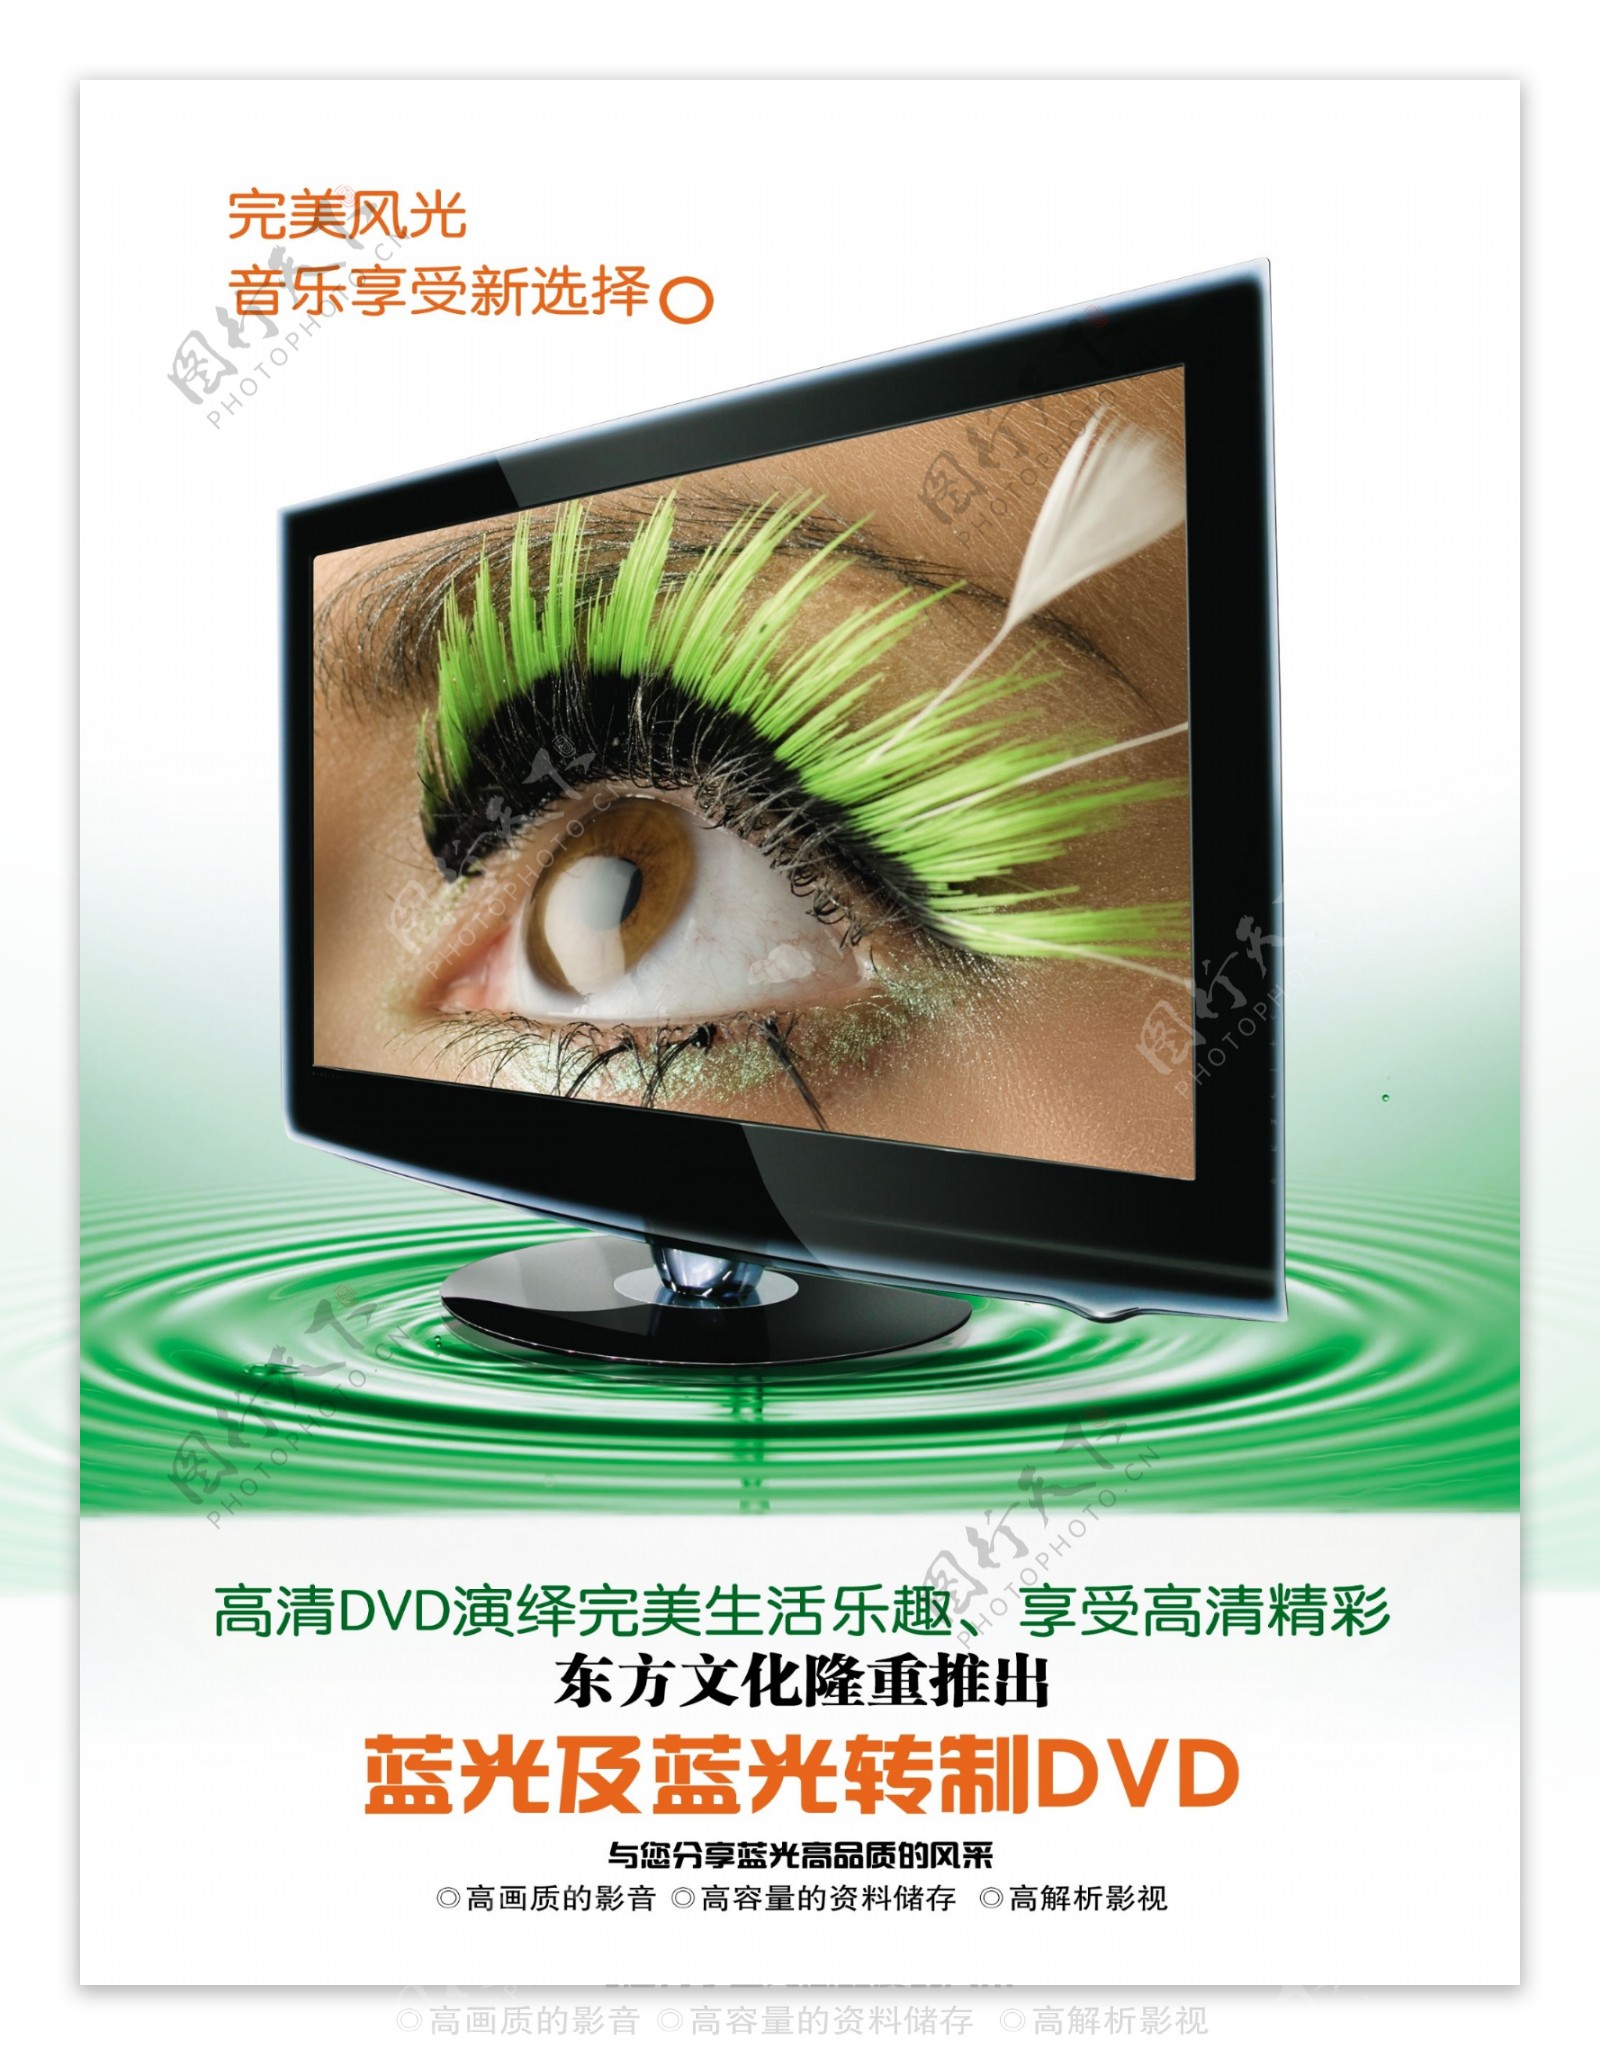 高清dvd液晶显示器图片